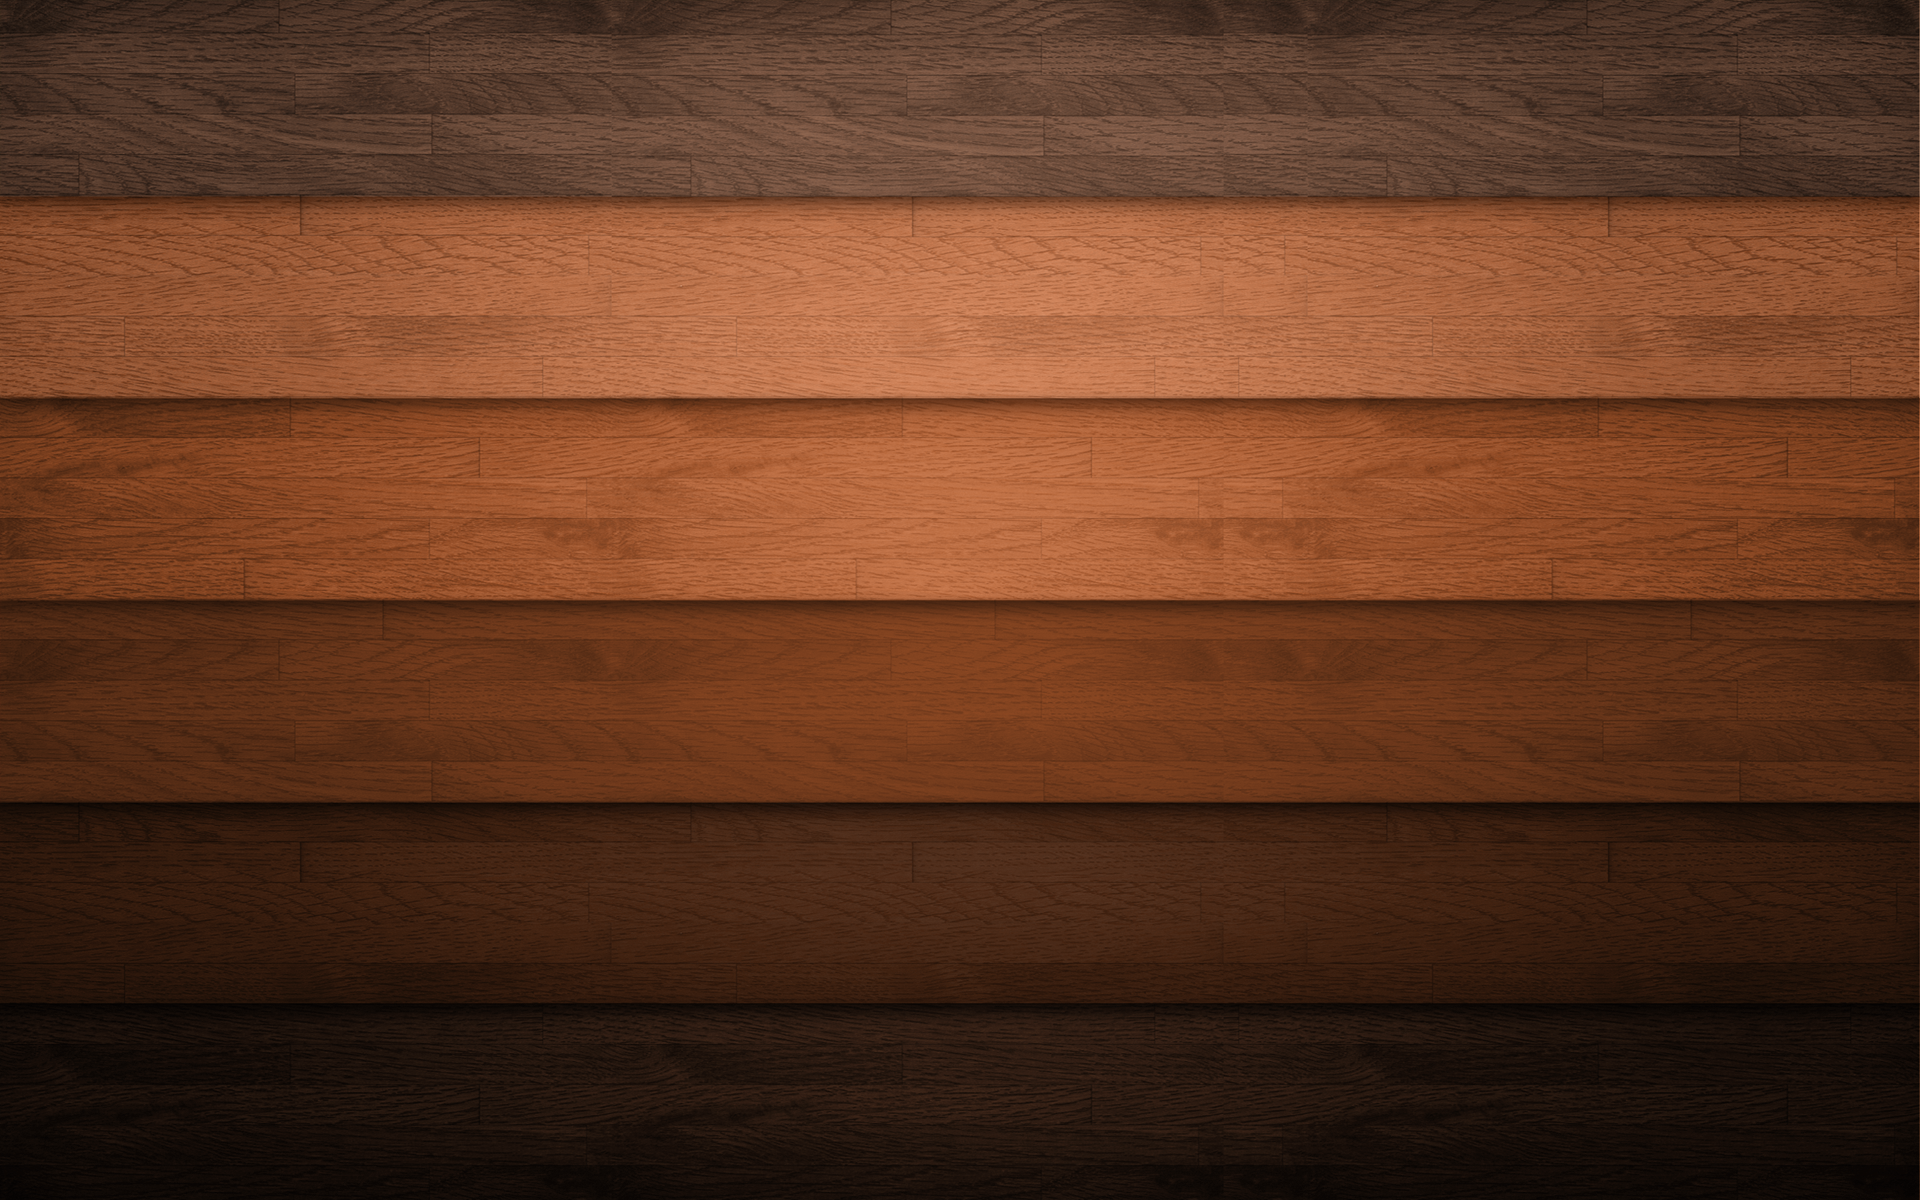 Hình nền gỗ planks miễn phí: Những hình ảnh nền gỗ planks miễn phí sẽ giúp bạn tiết kiệm được thời gian và chi phí trong việc tìm kiếm những vật liệu trang trí mới cho ngôi nhà của bạn. Hãy xem và lựa chọn những hình ảnh phù hợp với phong cách trang trí của bạn.